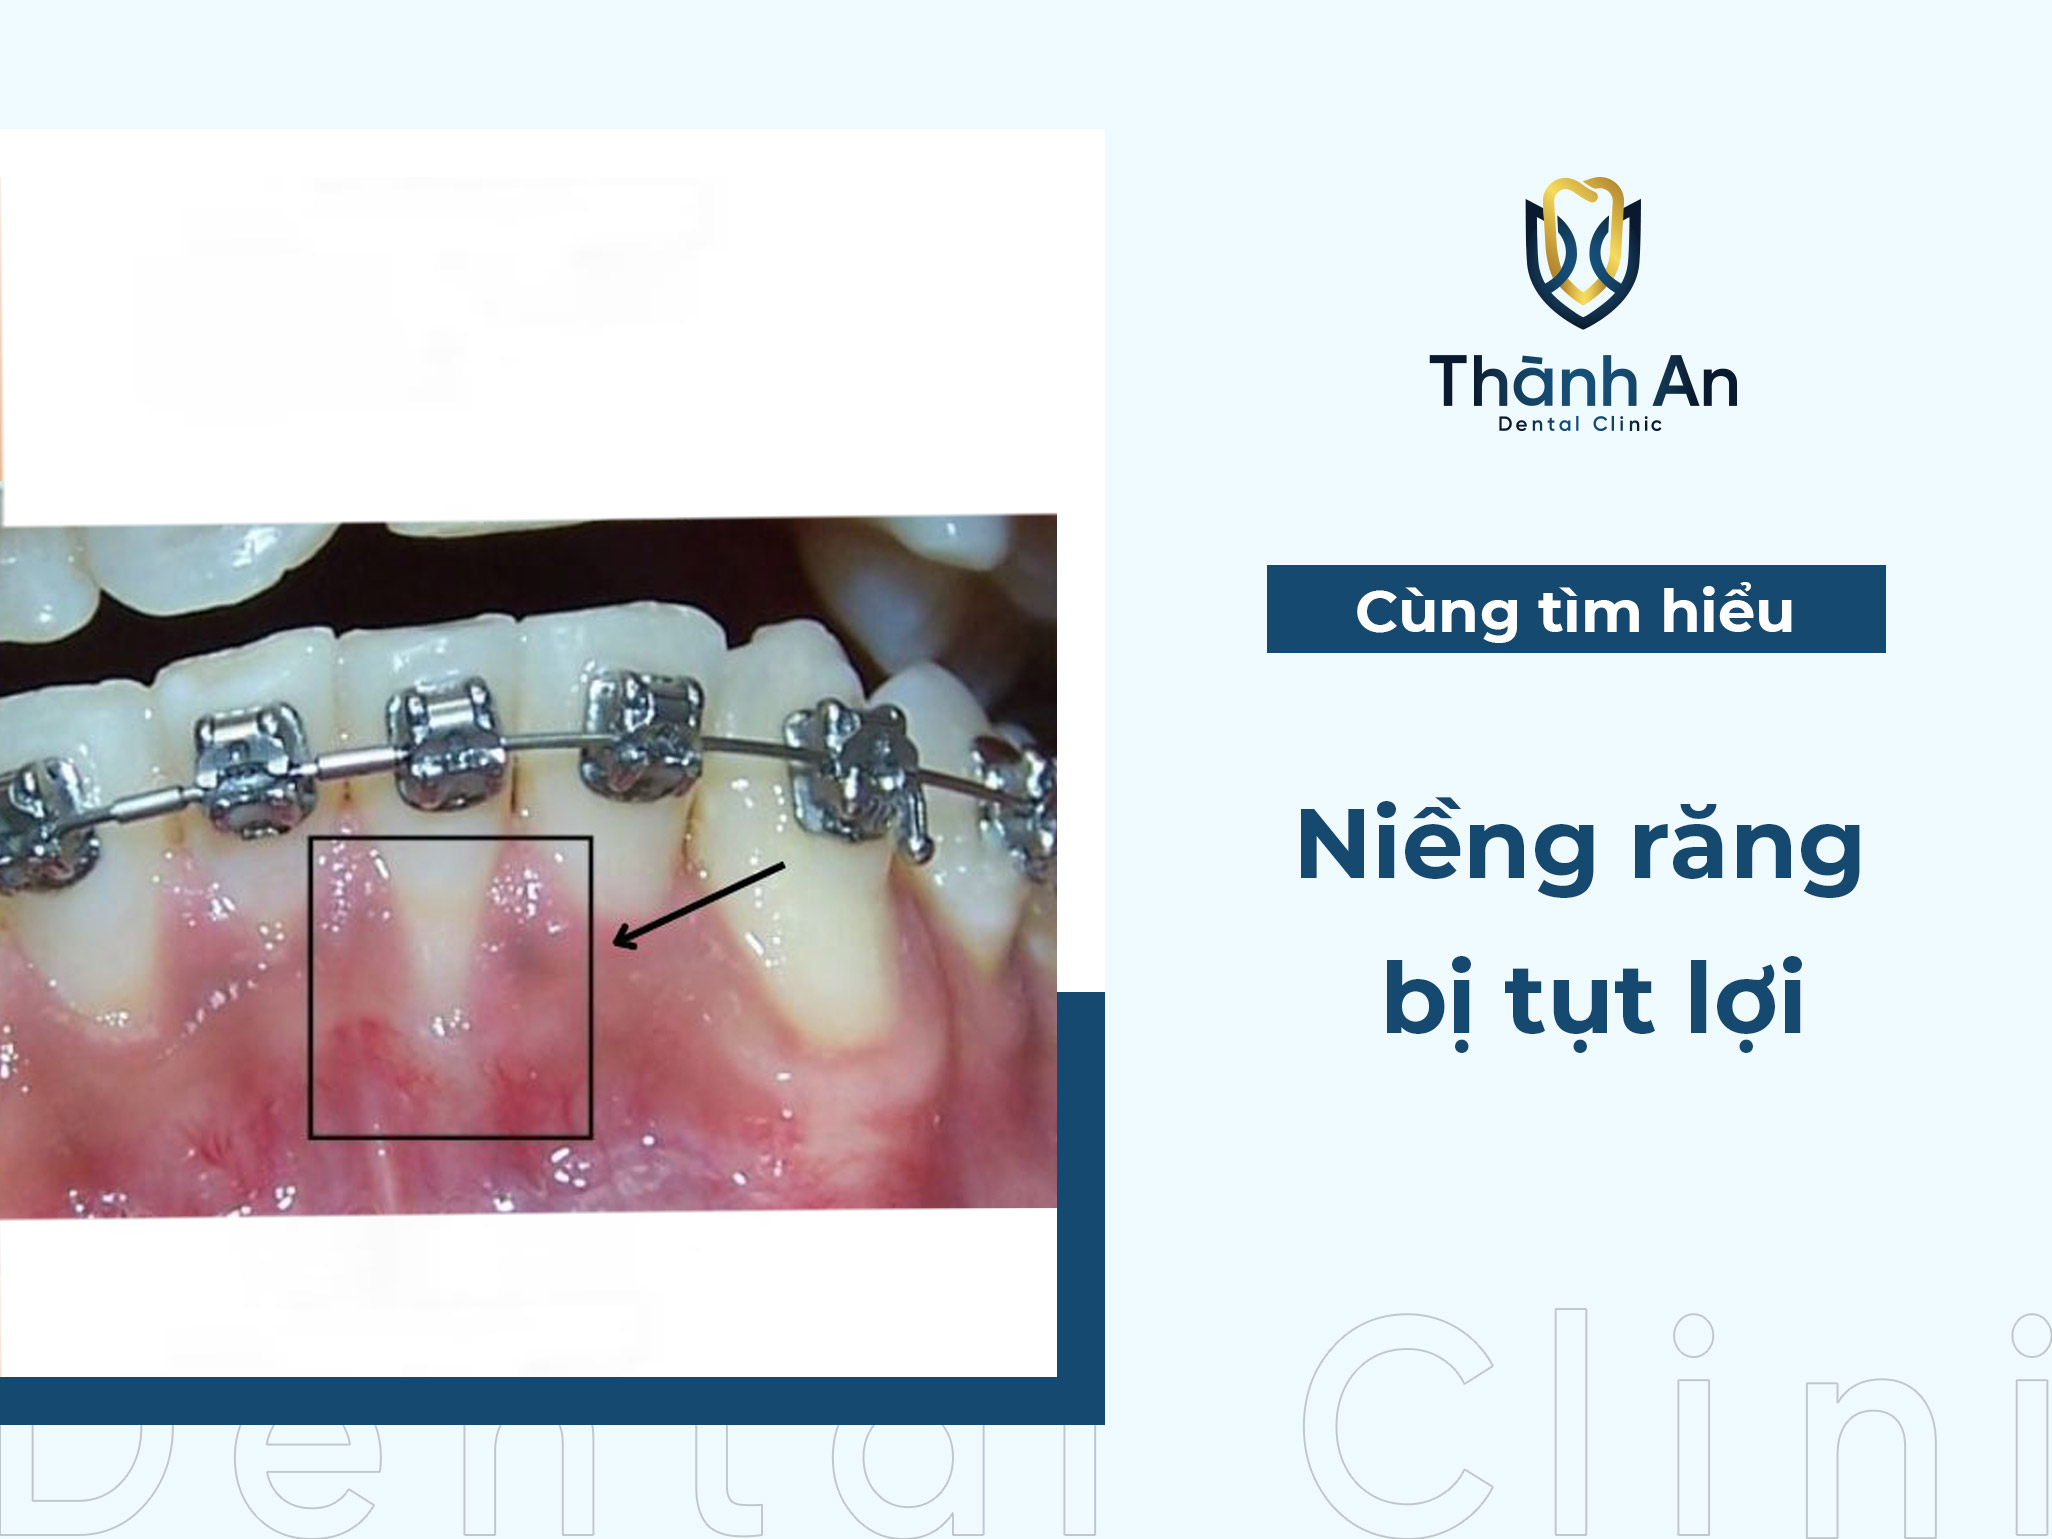 Niềng răng bị tụt lợi: Nguyên nhân, dấu hiệu và cách khắc phục hiệu quả